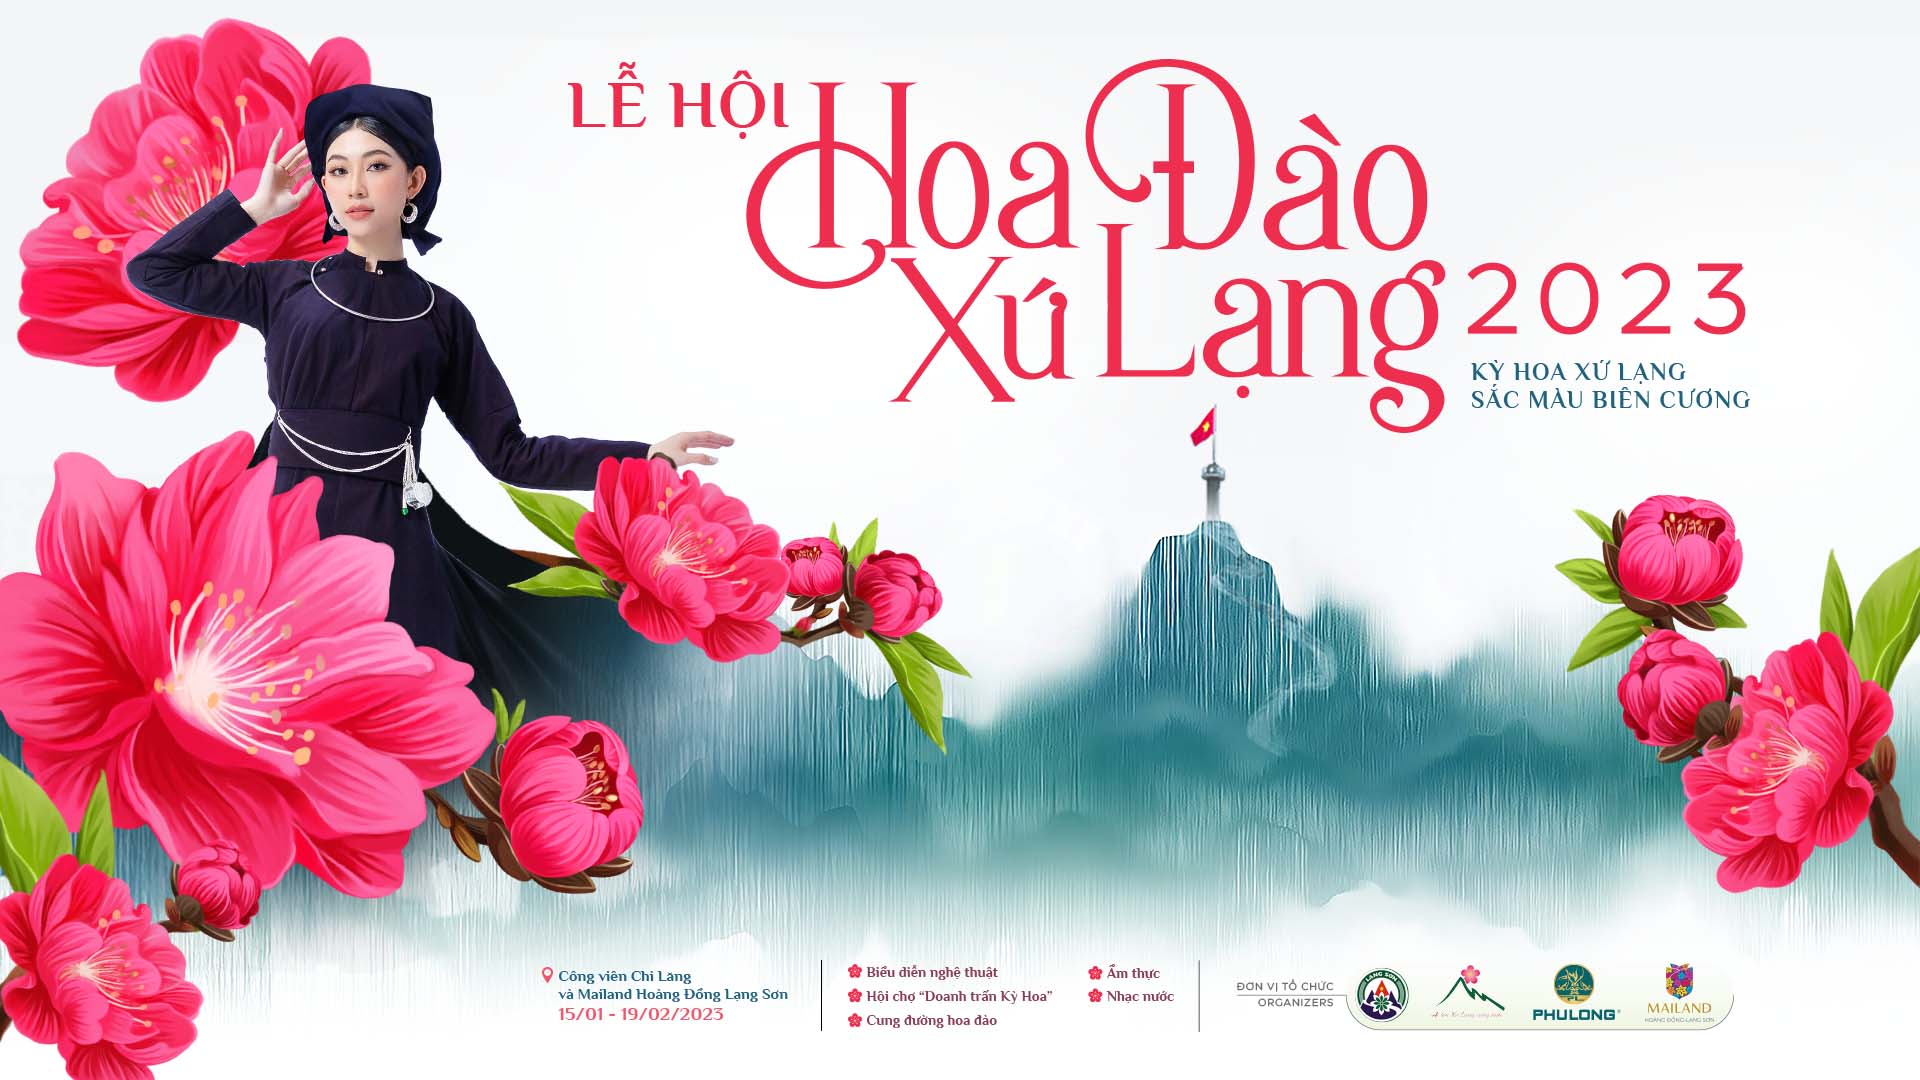 Lễ hội Hoa Đào Lạng Sơn 2023 - Kỳ hoa xứ Lạng, sắc màu biên cương - Ảnh 1.